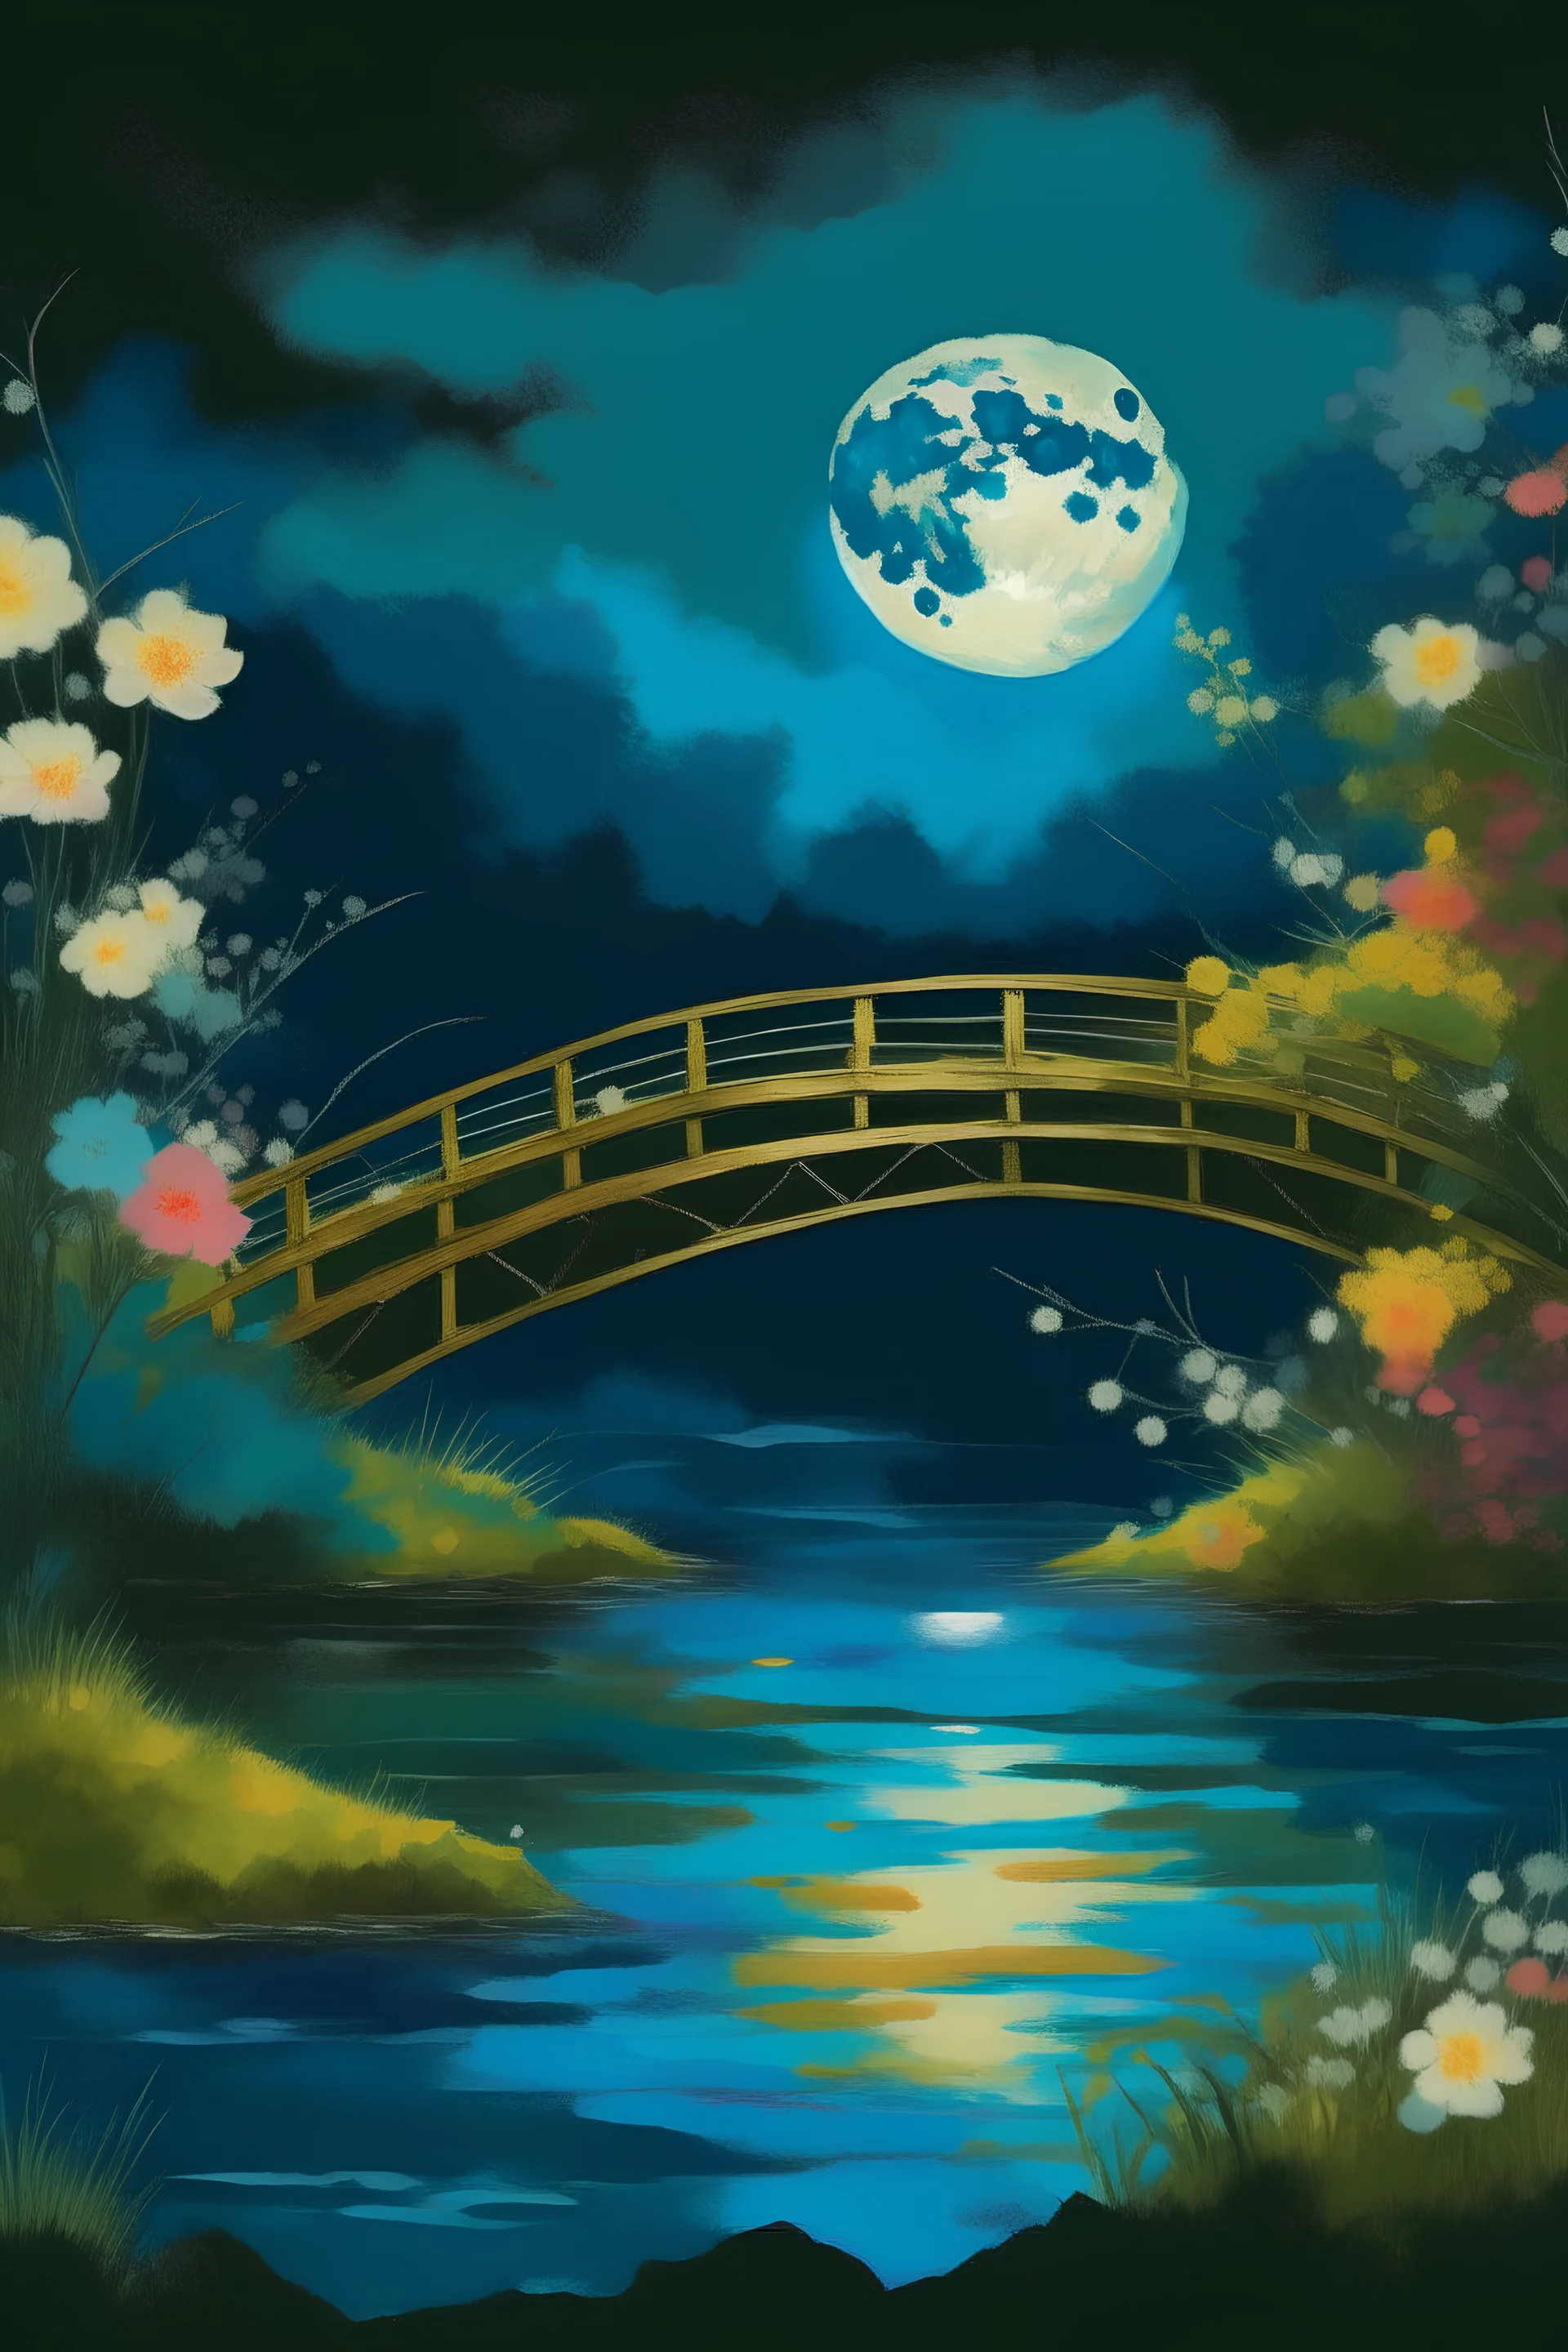 fazer uma obra artística do impressionismo com uma ponte japonesa iluminada em cima de um rio com flores no escuro com uma lua